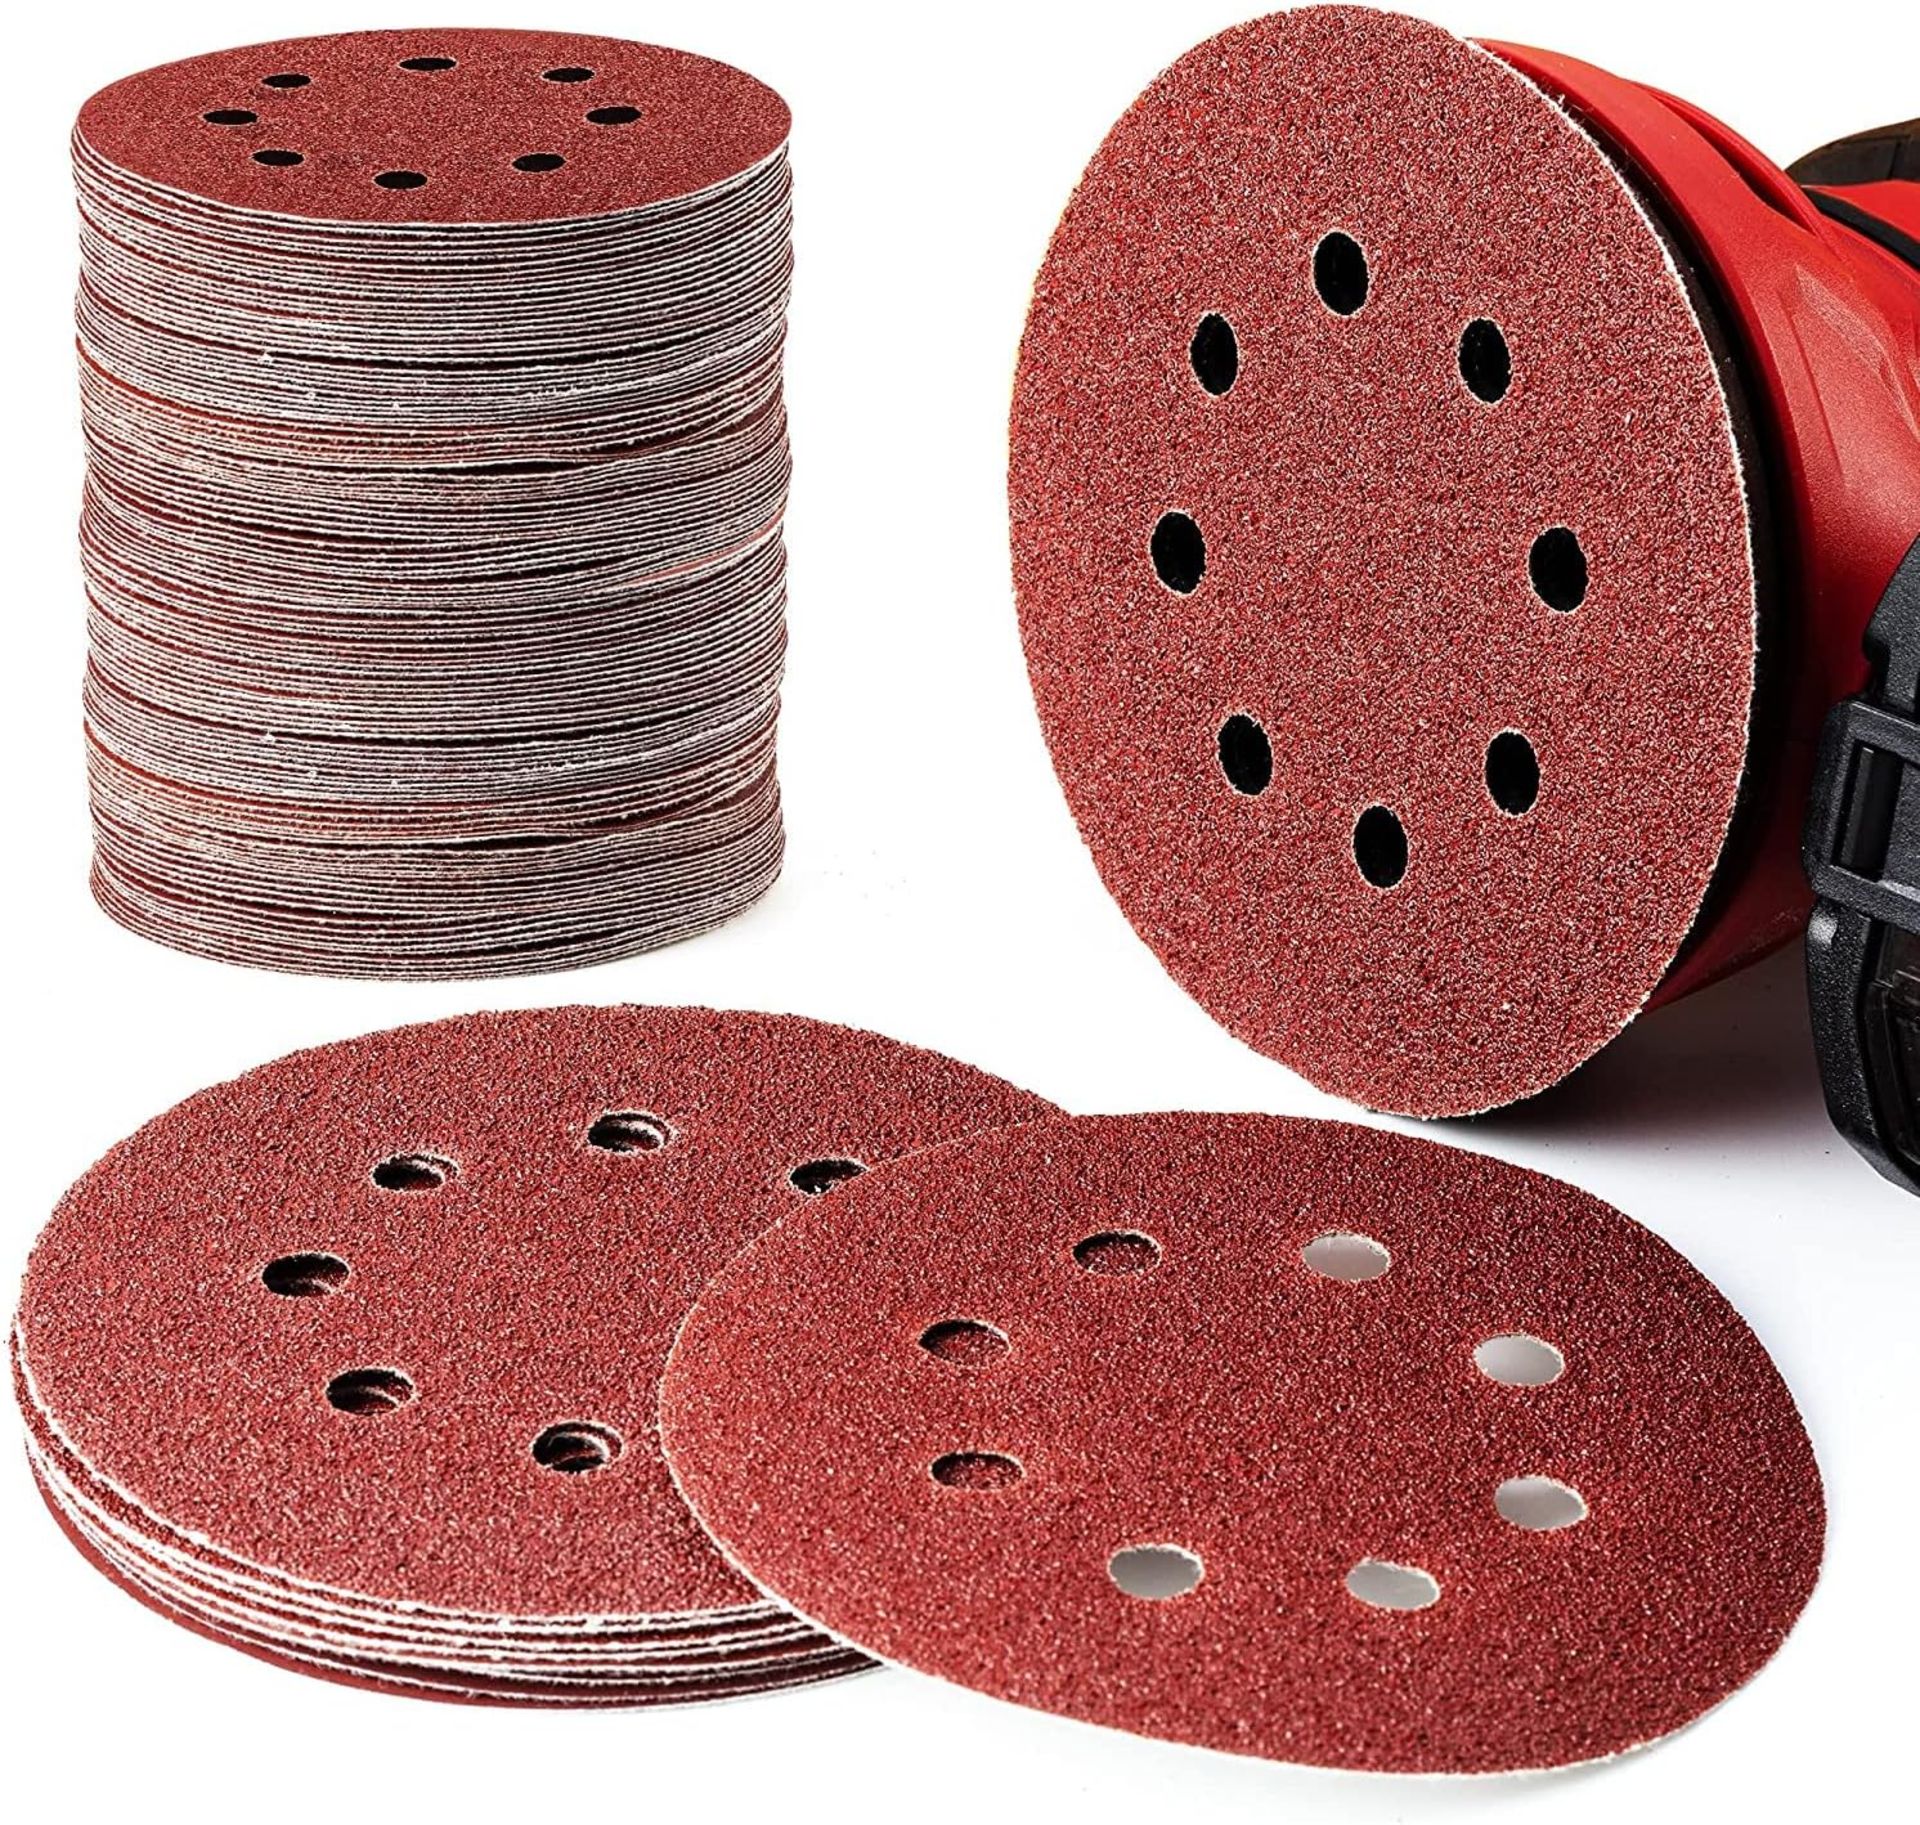 EZARC 125mm Sanding Discs 180PCS Hook and Loop Sanding Pads 8 Holes Orbital Sander Discs